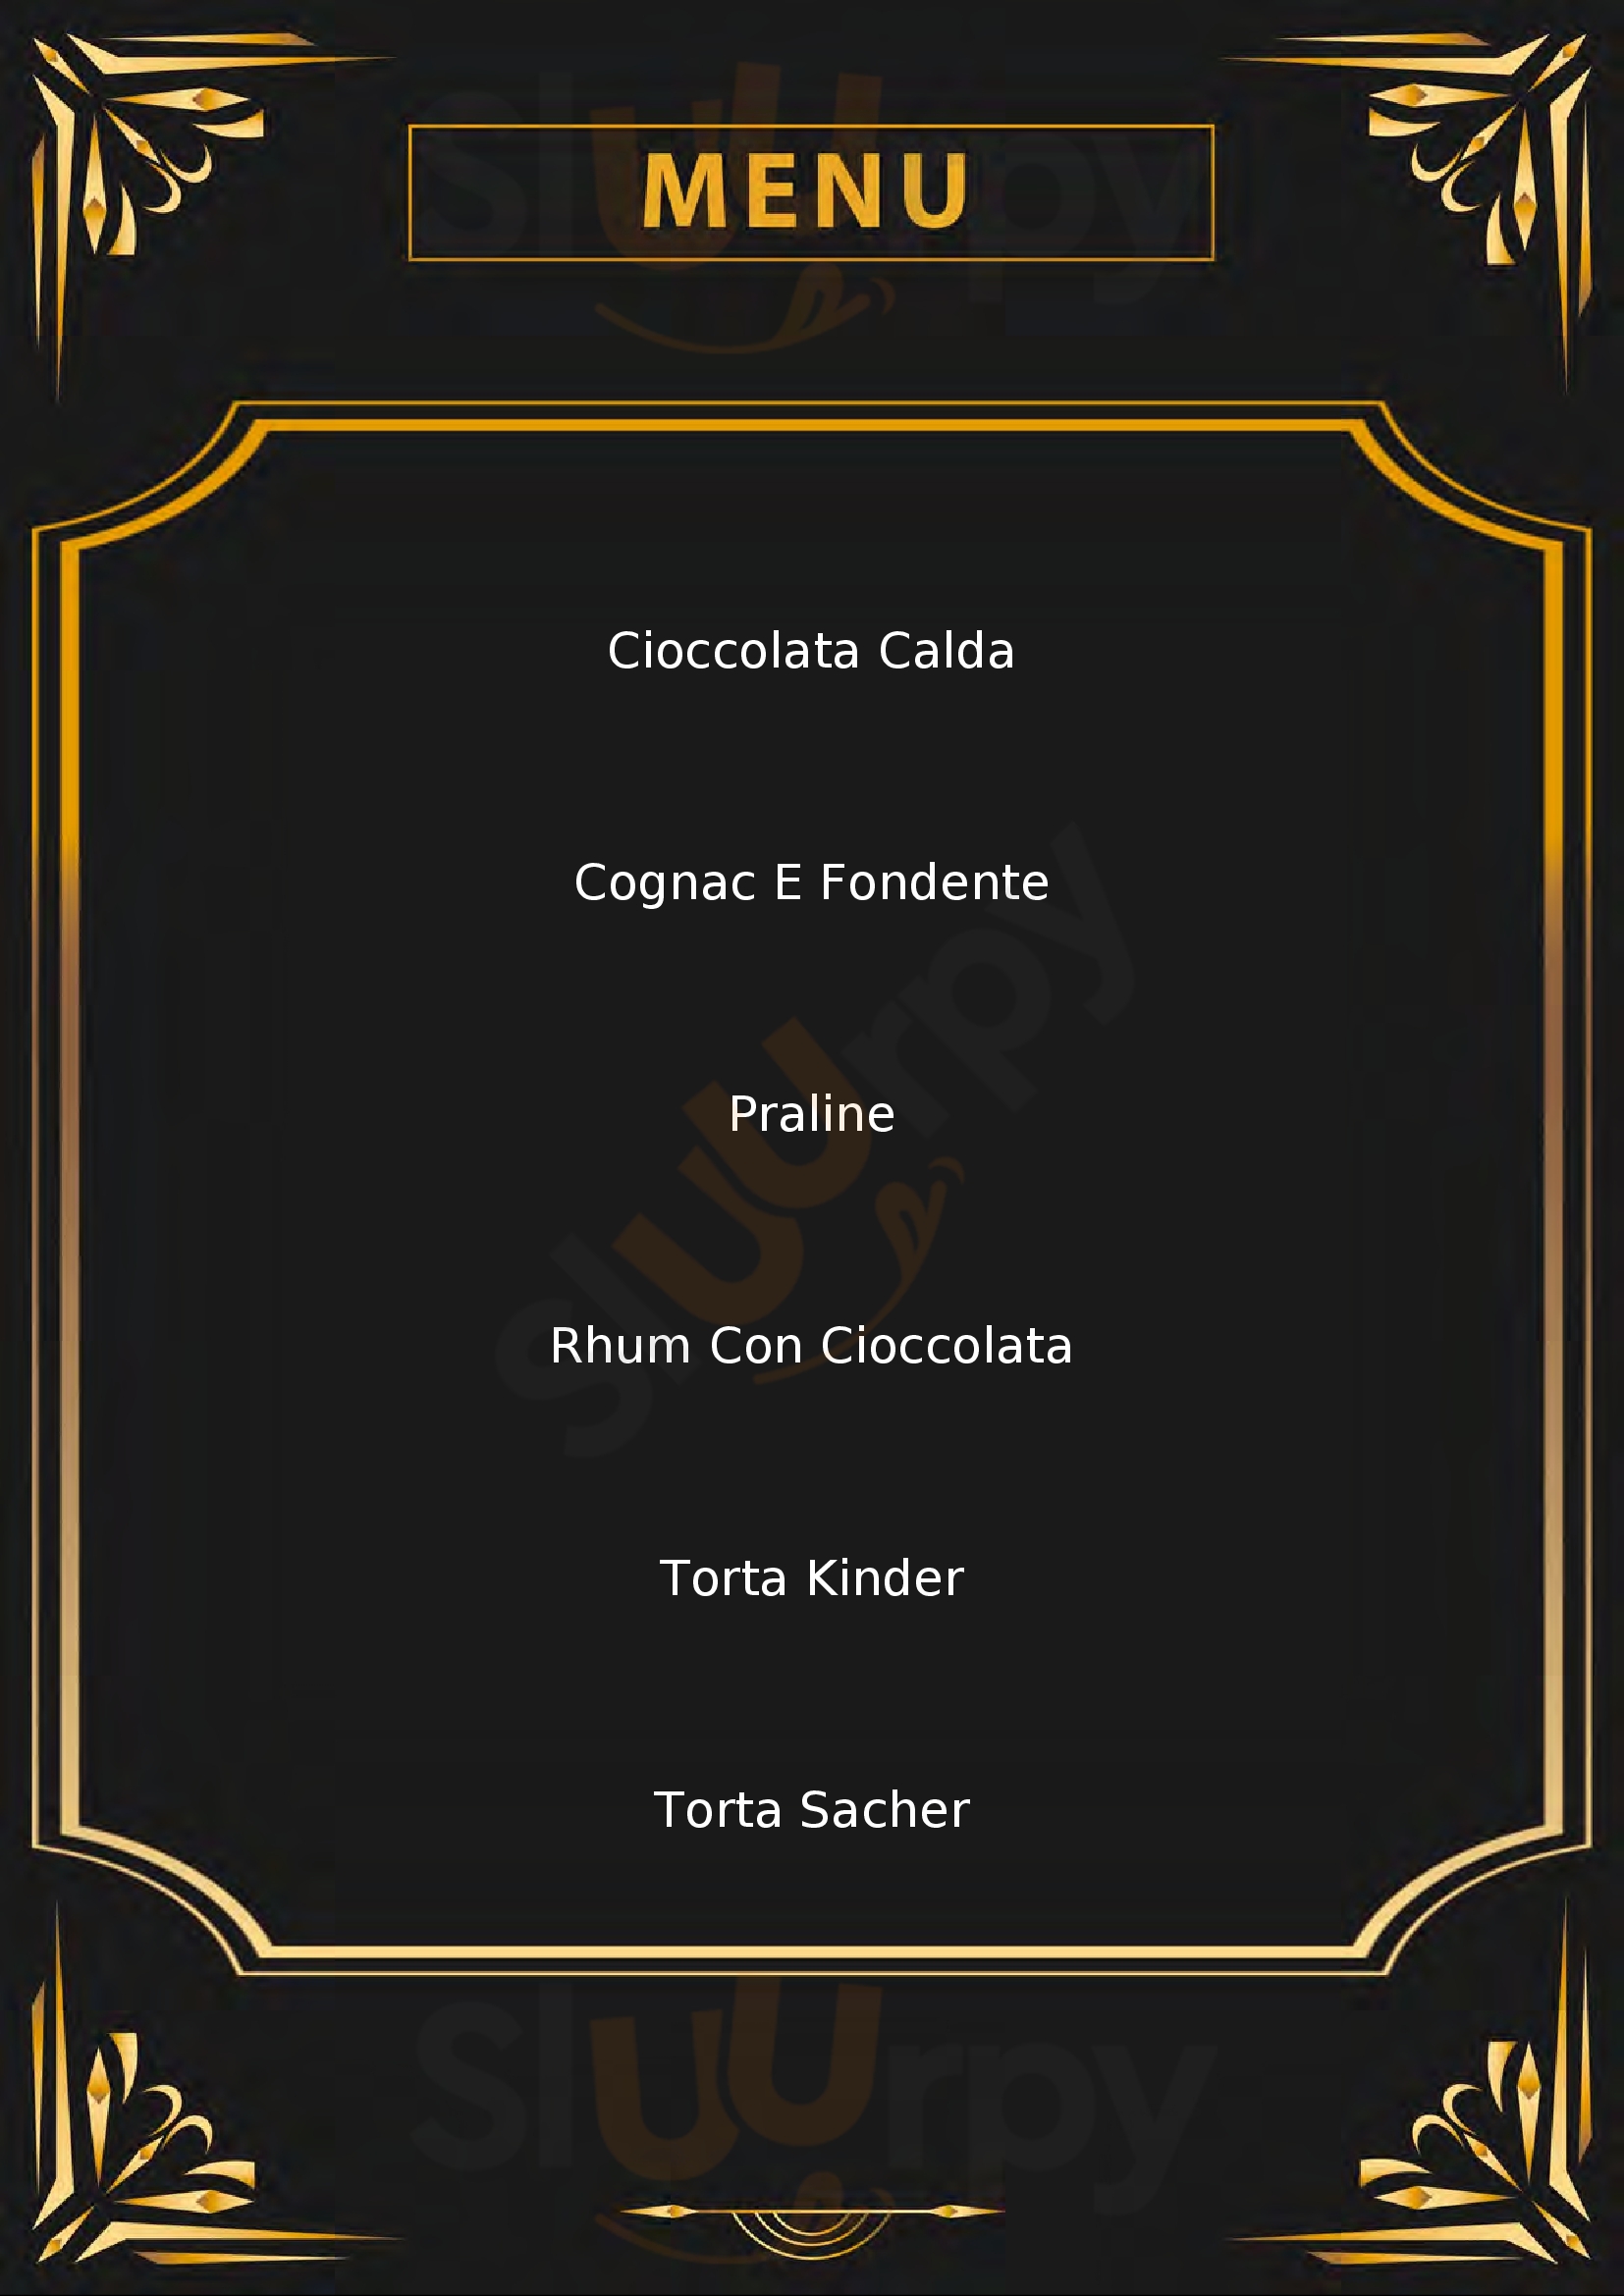 Cioccolateria Prisline Frosinone menù 1 pagina